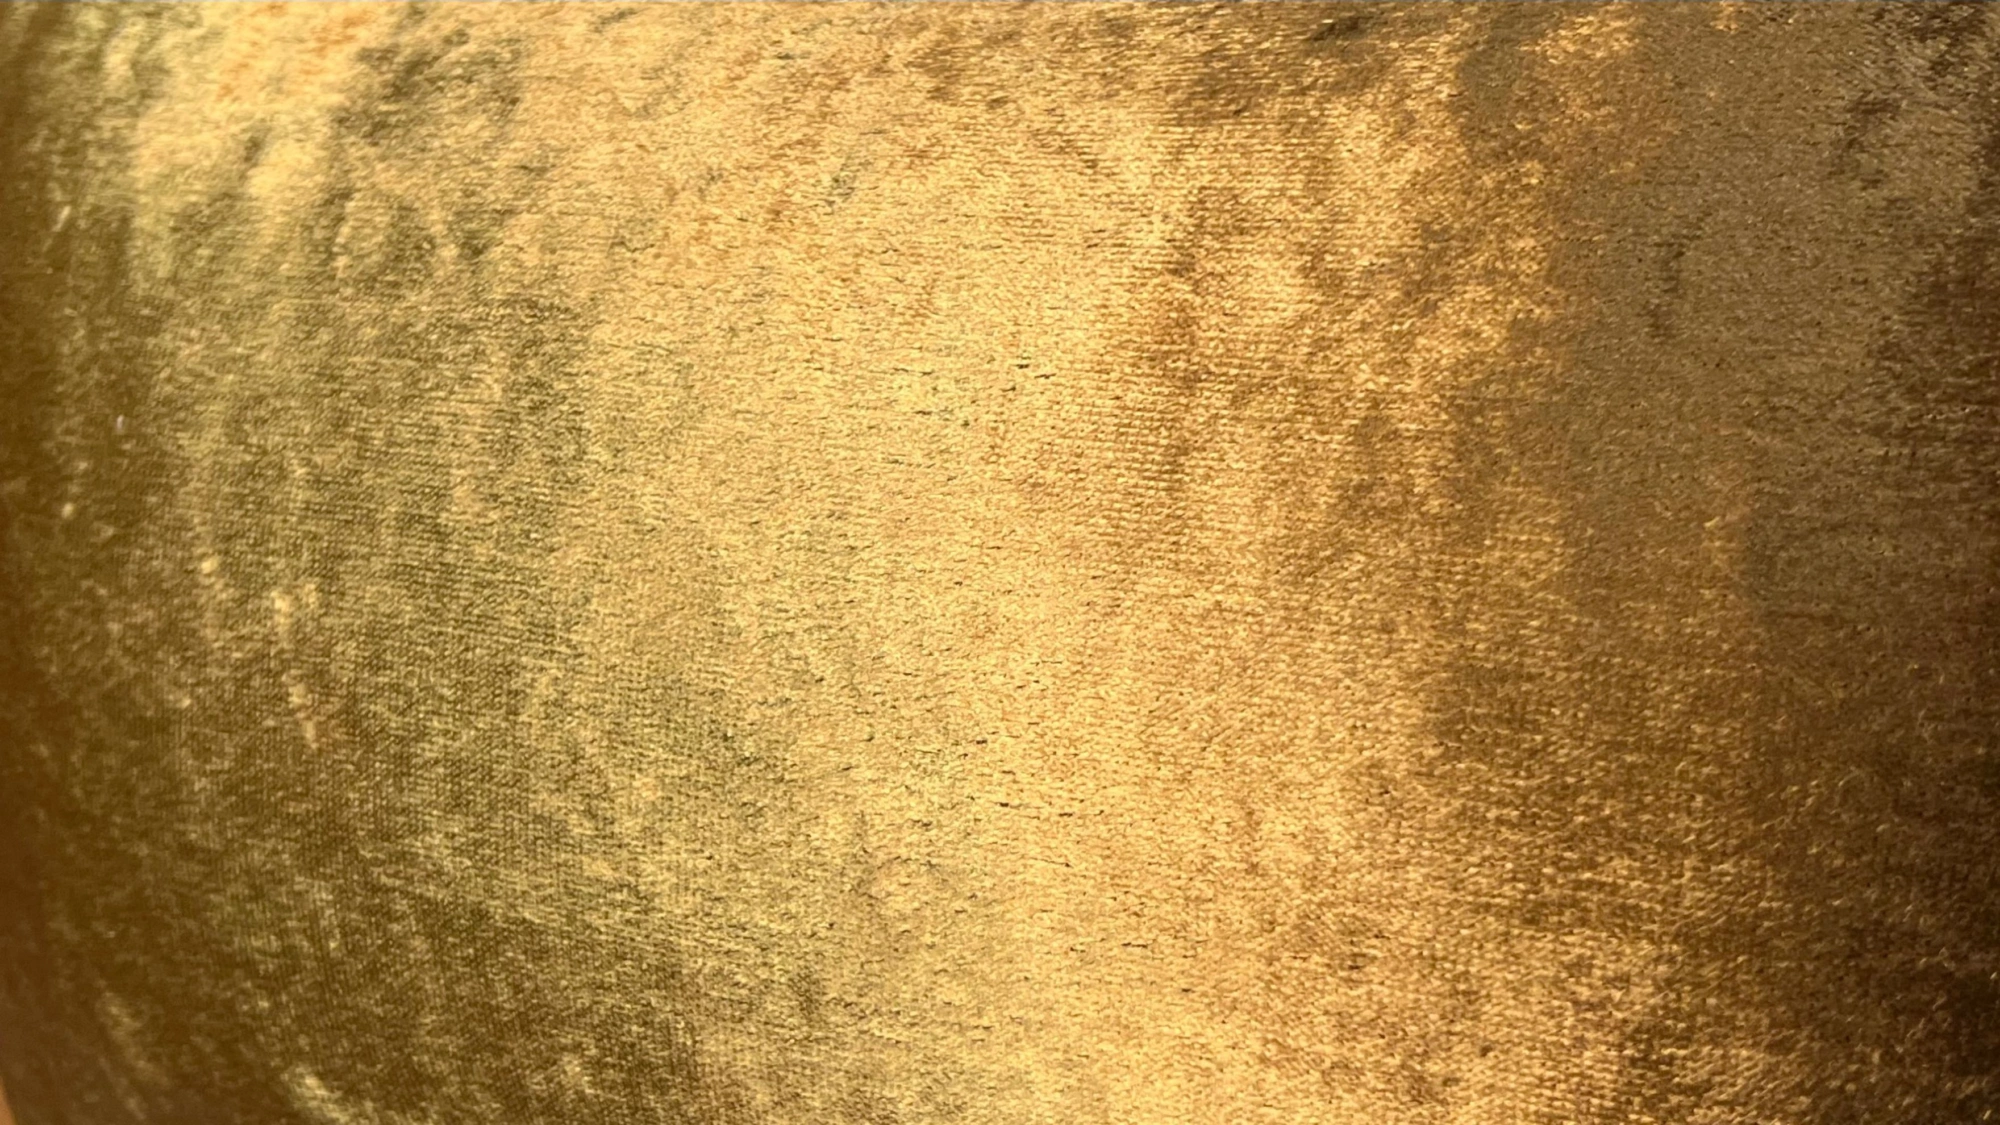 Copper Gold